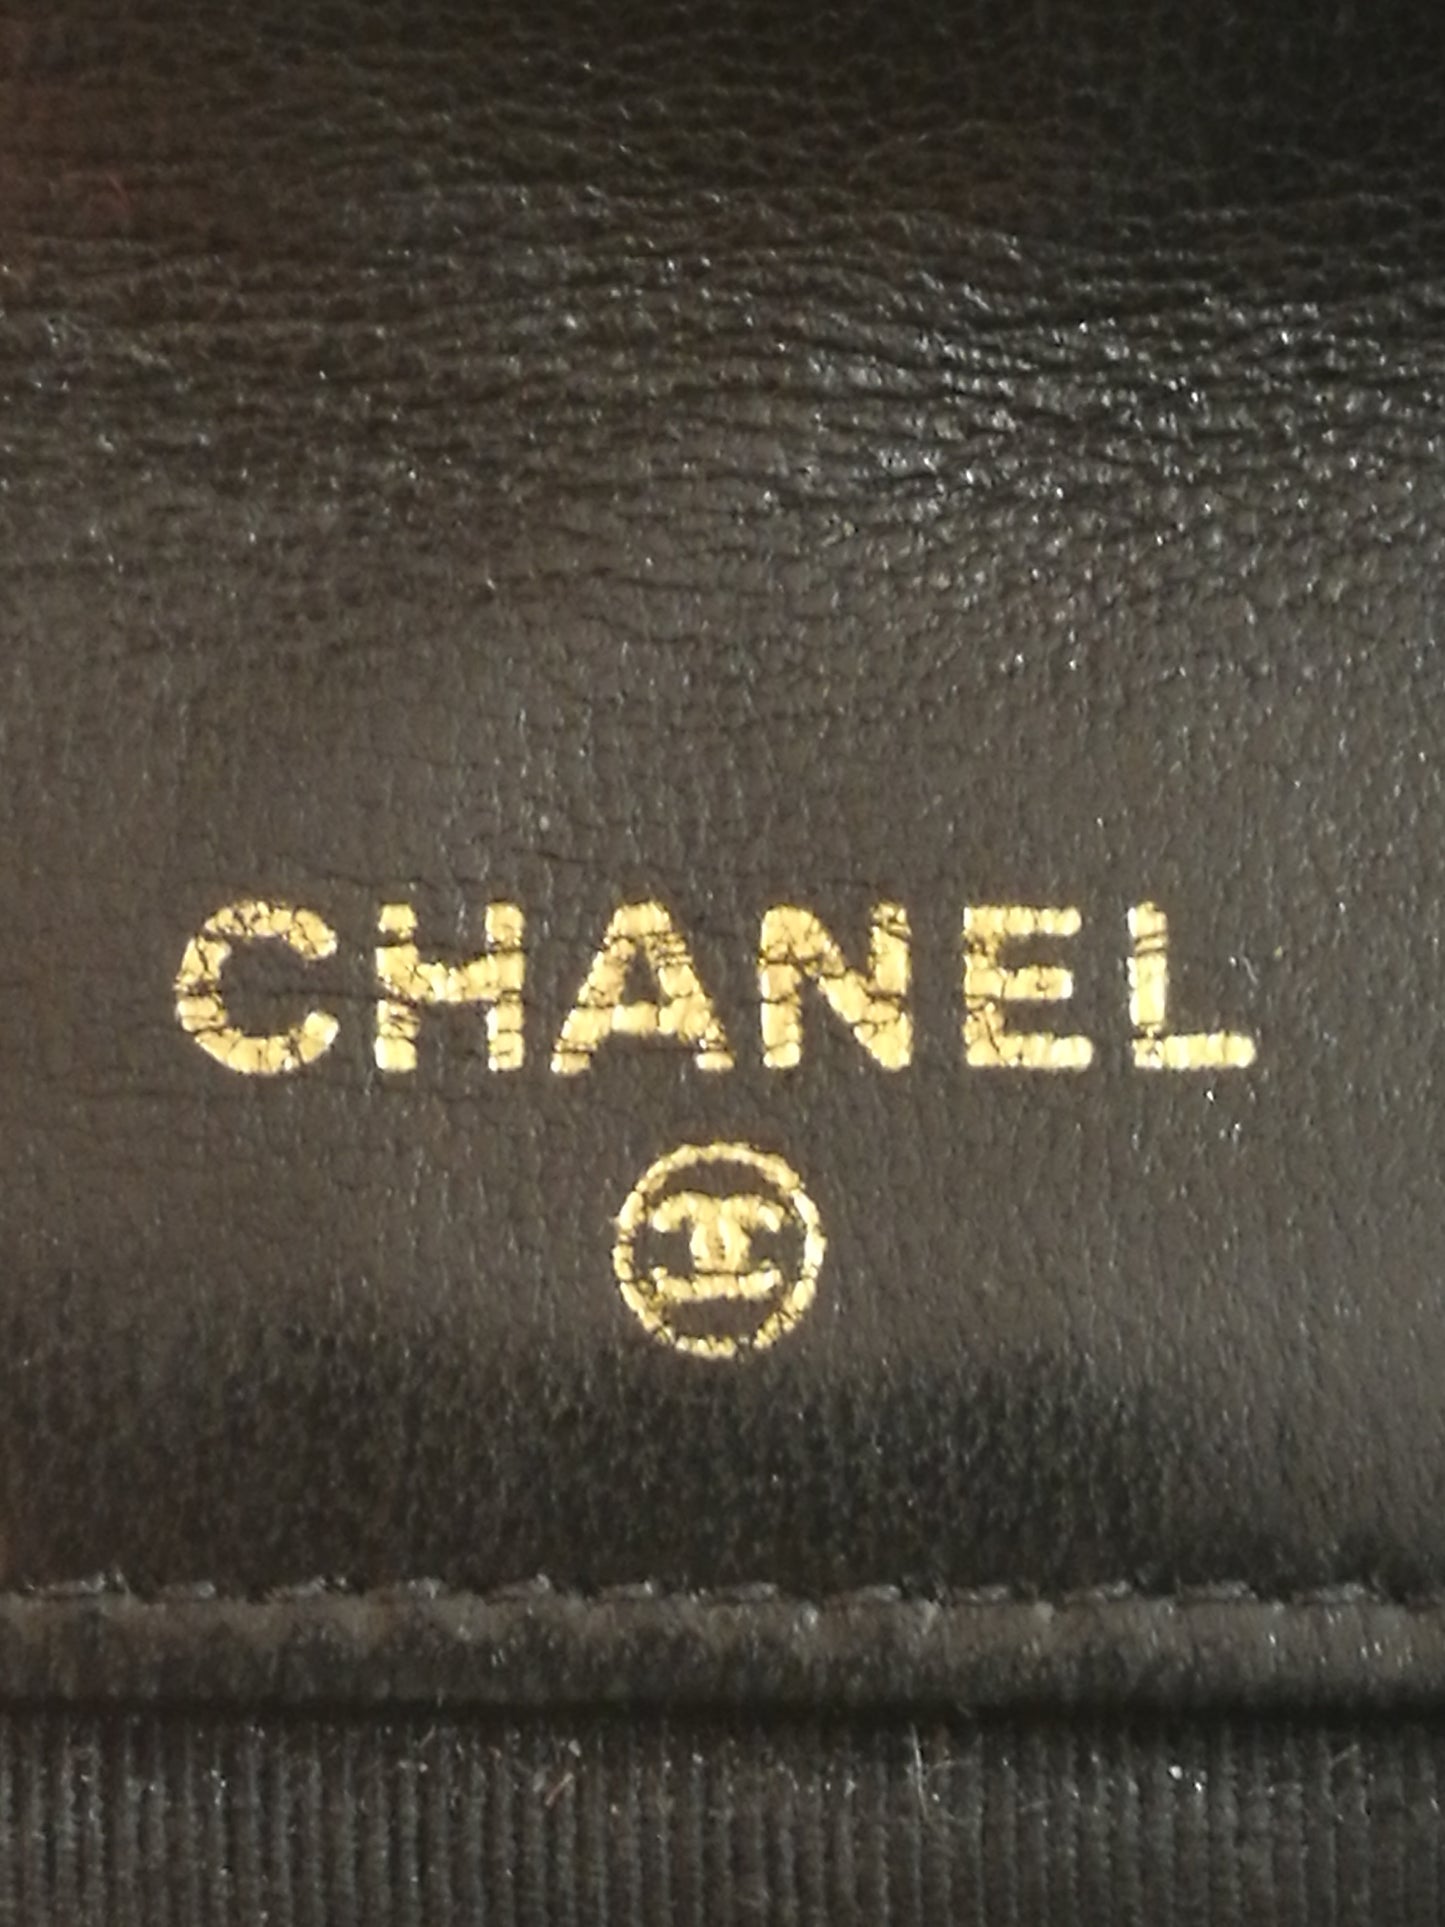 Chanel Maxi XL